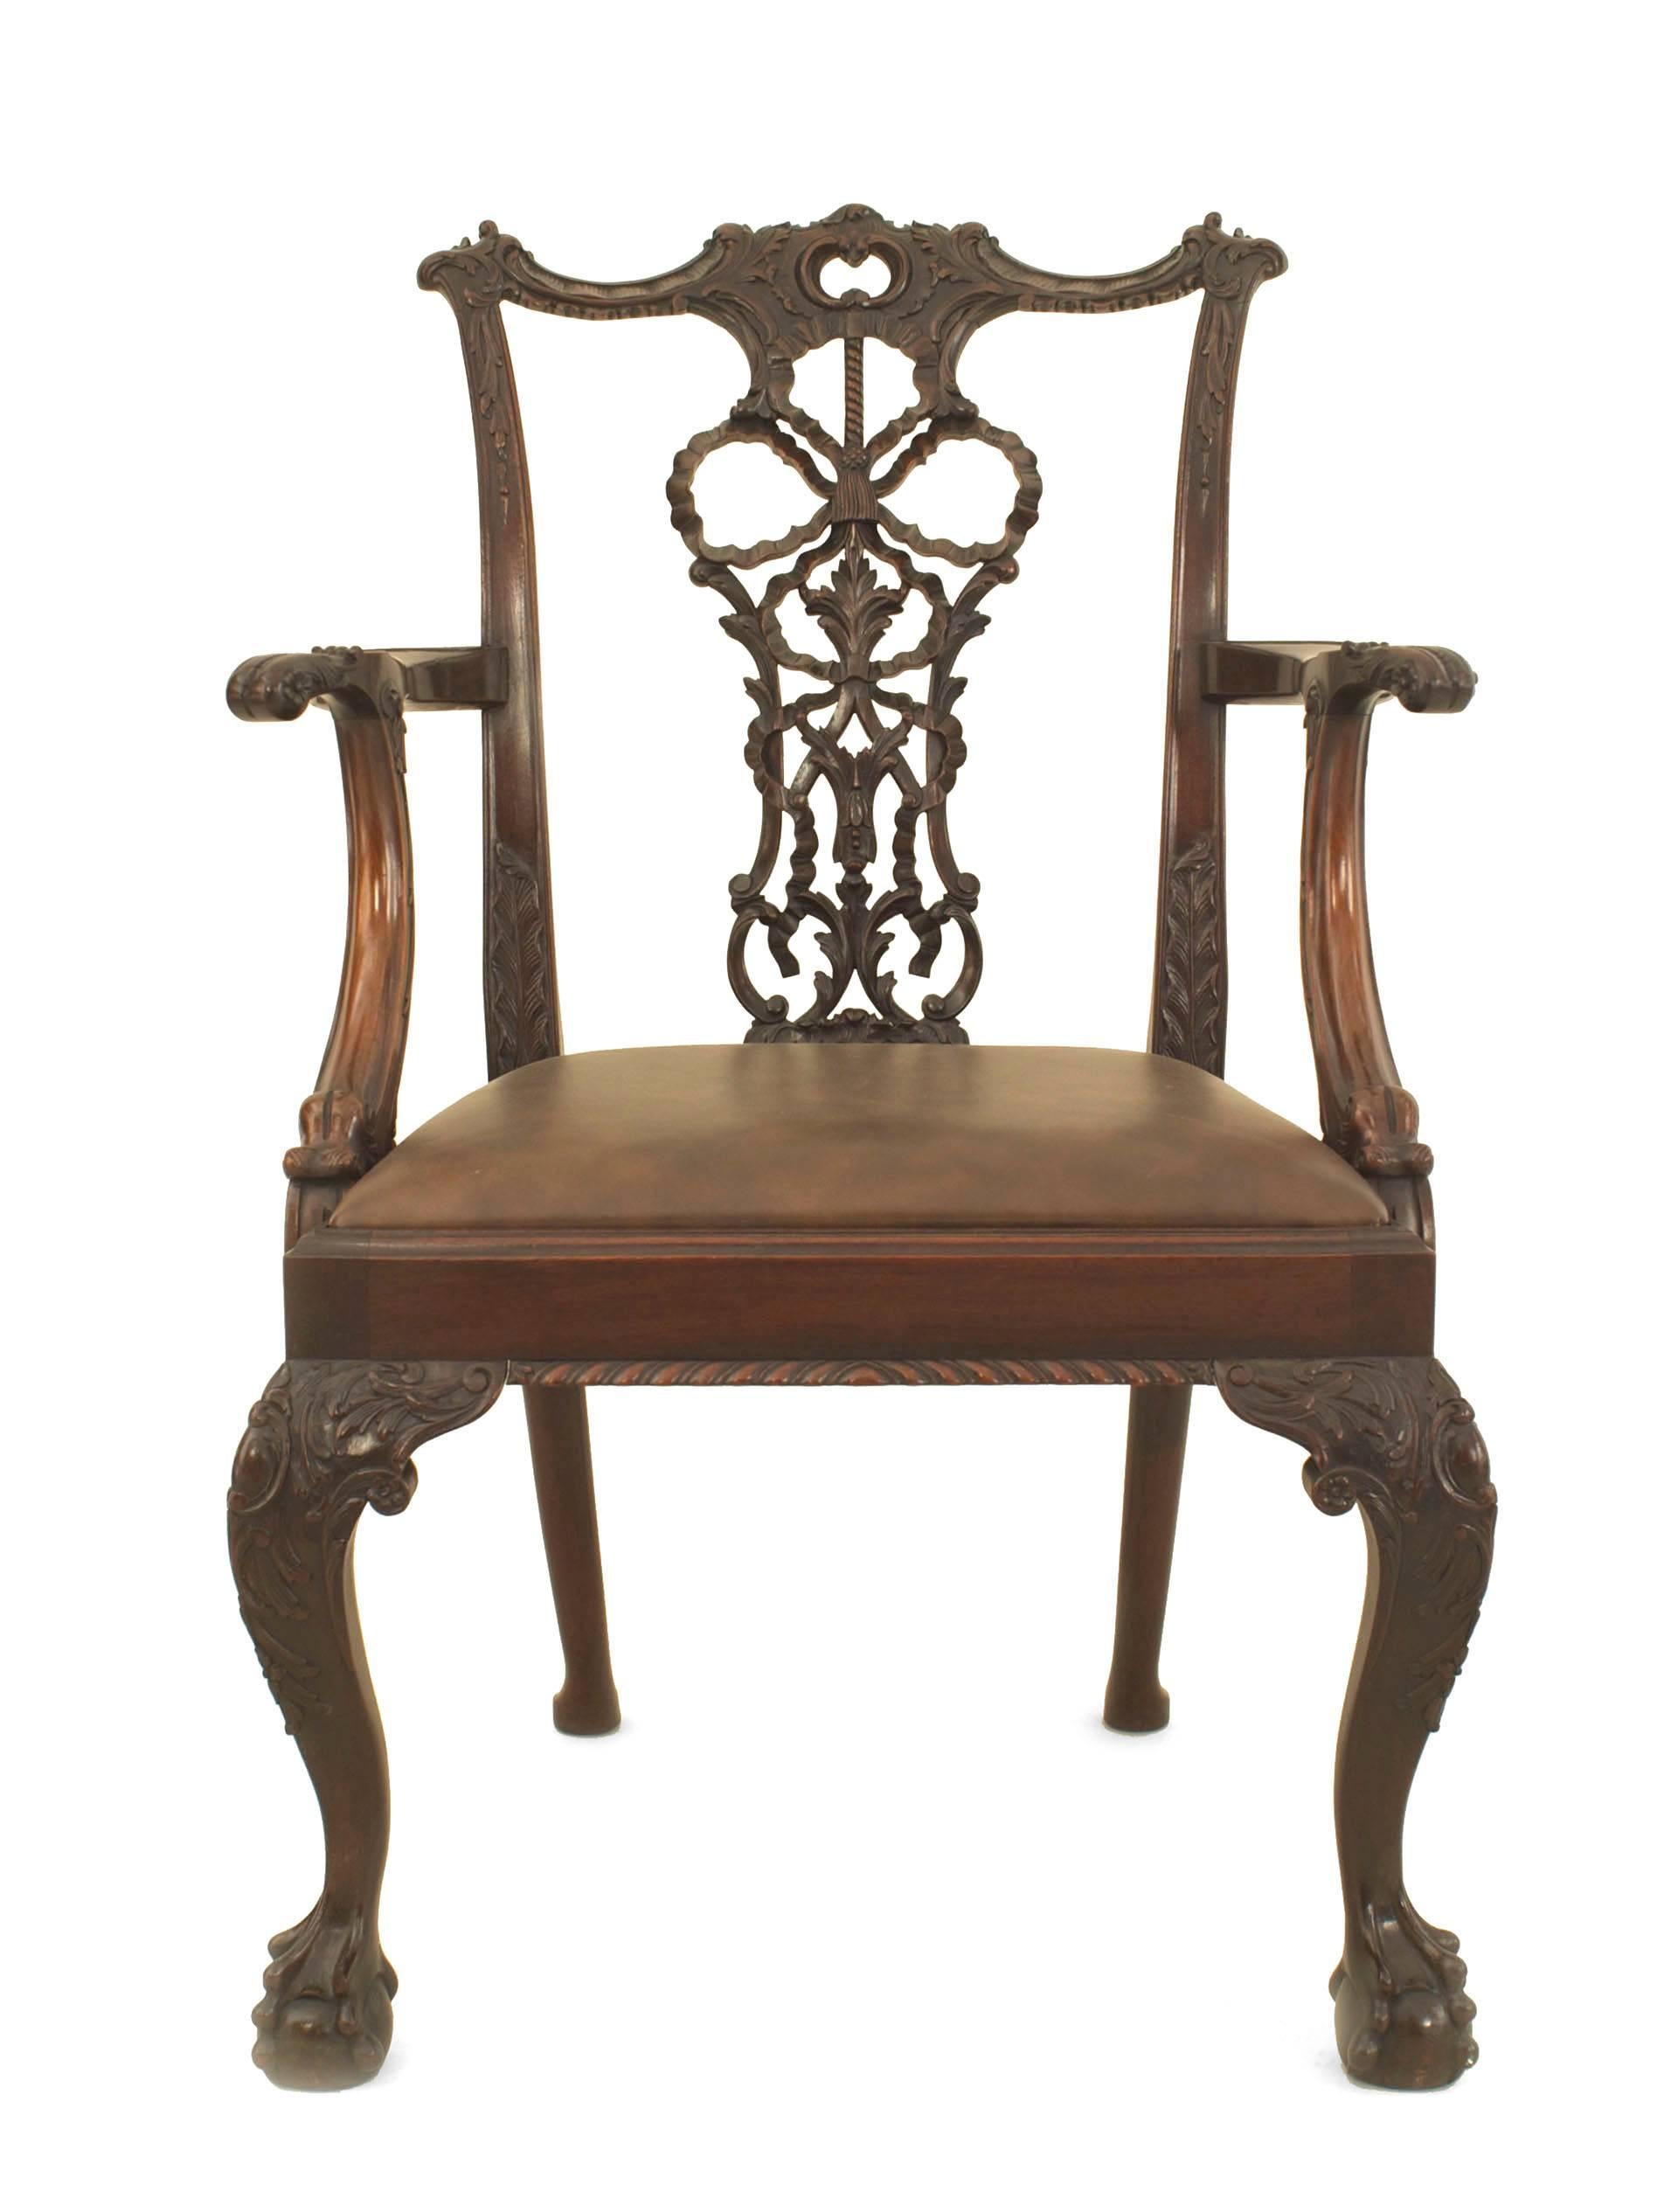 Satz von 8 englischen Stühlen im Chippendale-Stil (spätes 19. Jh.) mit geschnitzter Bandrückenlehne und neuem braunem Ledersitz. (2 Arme-26 